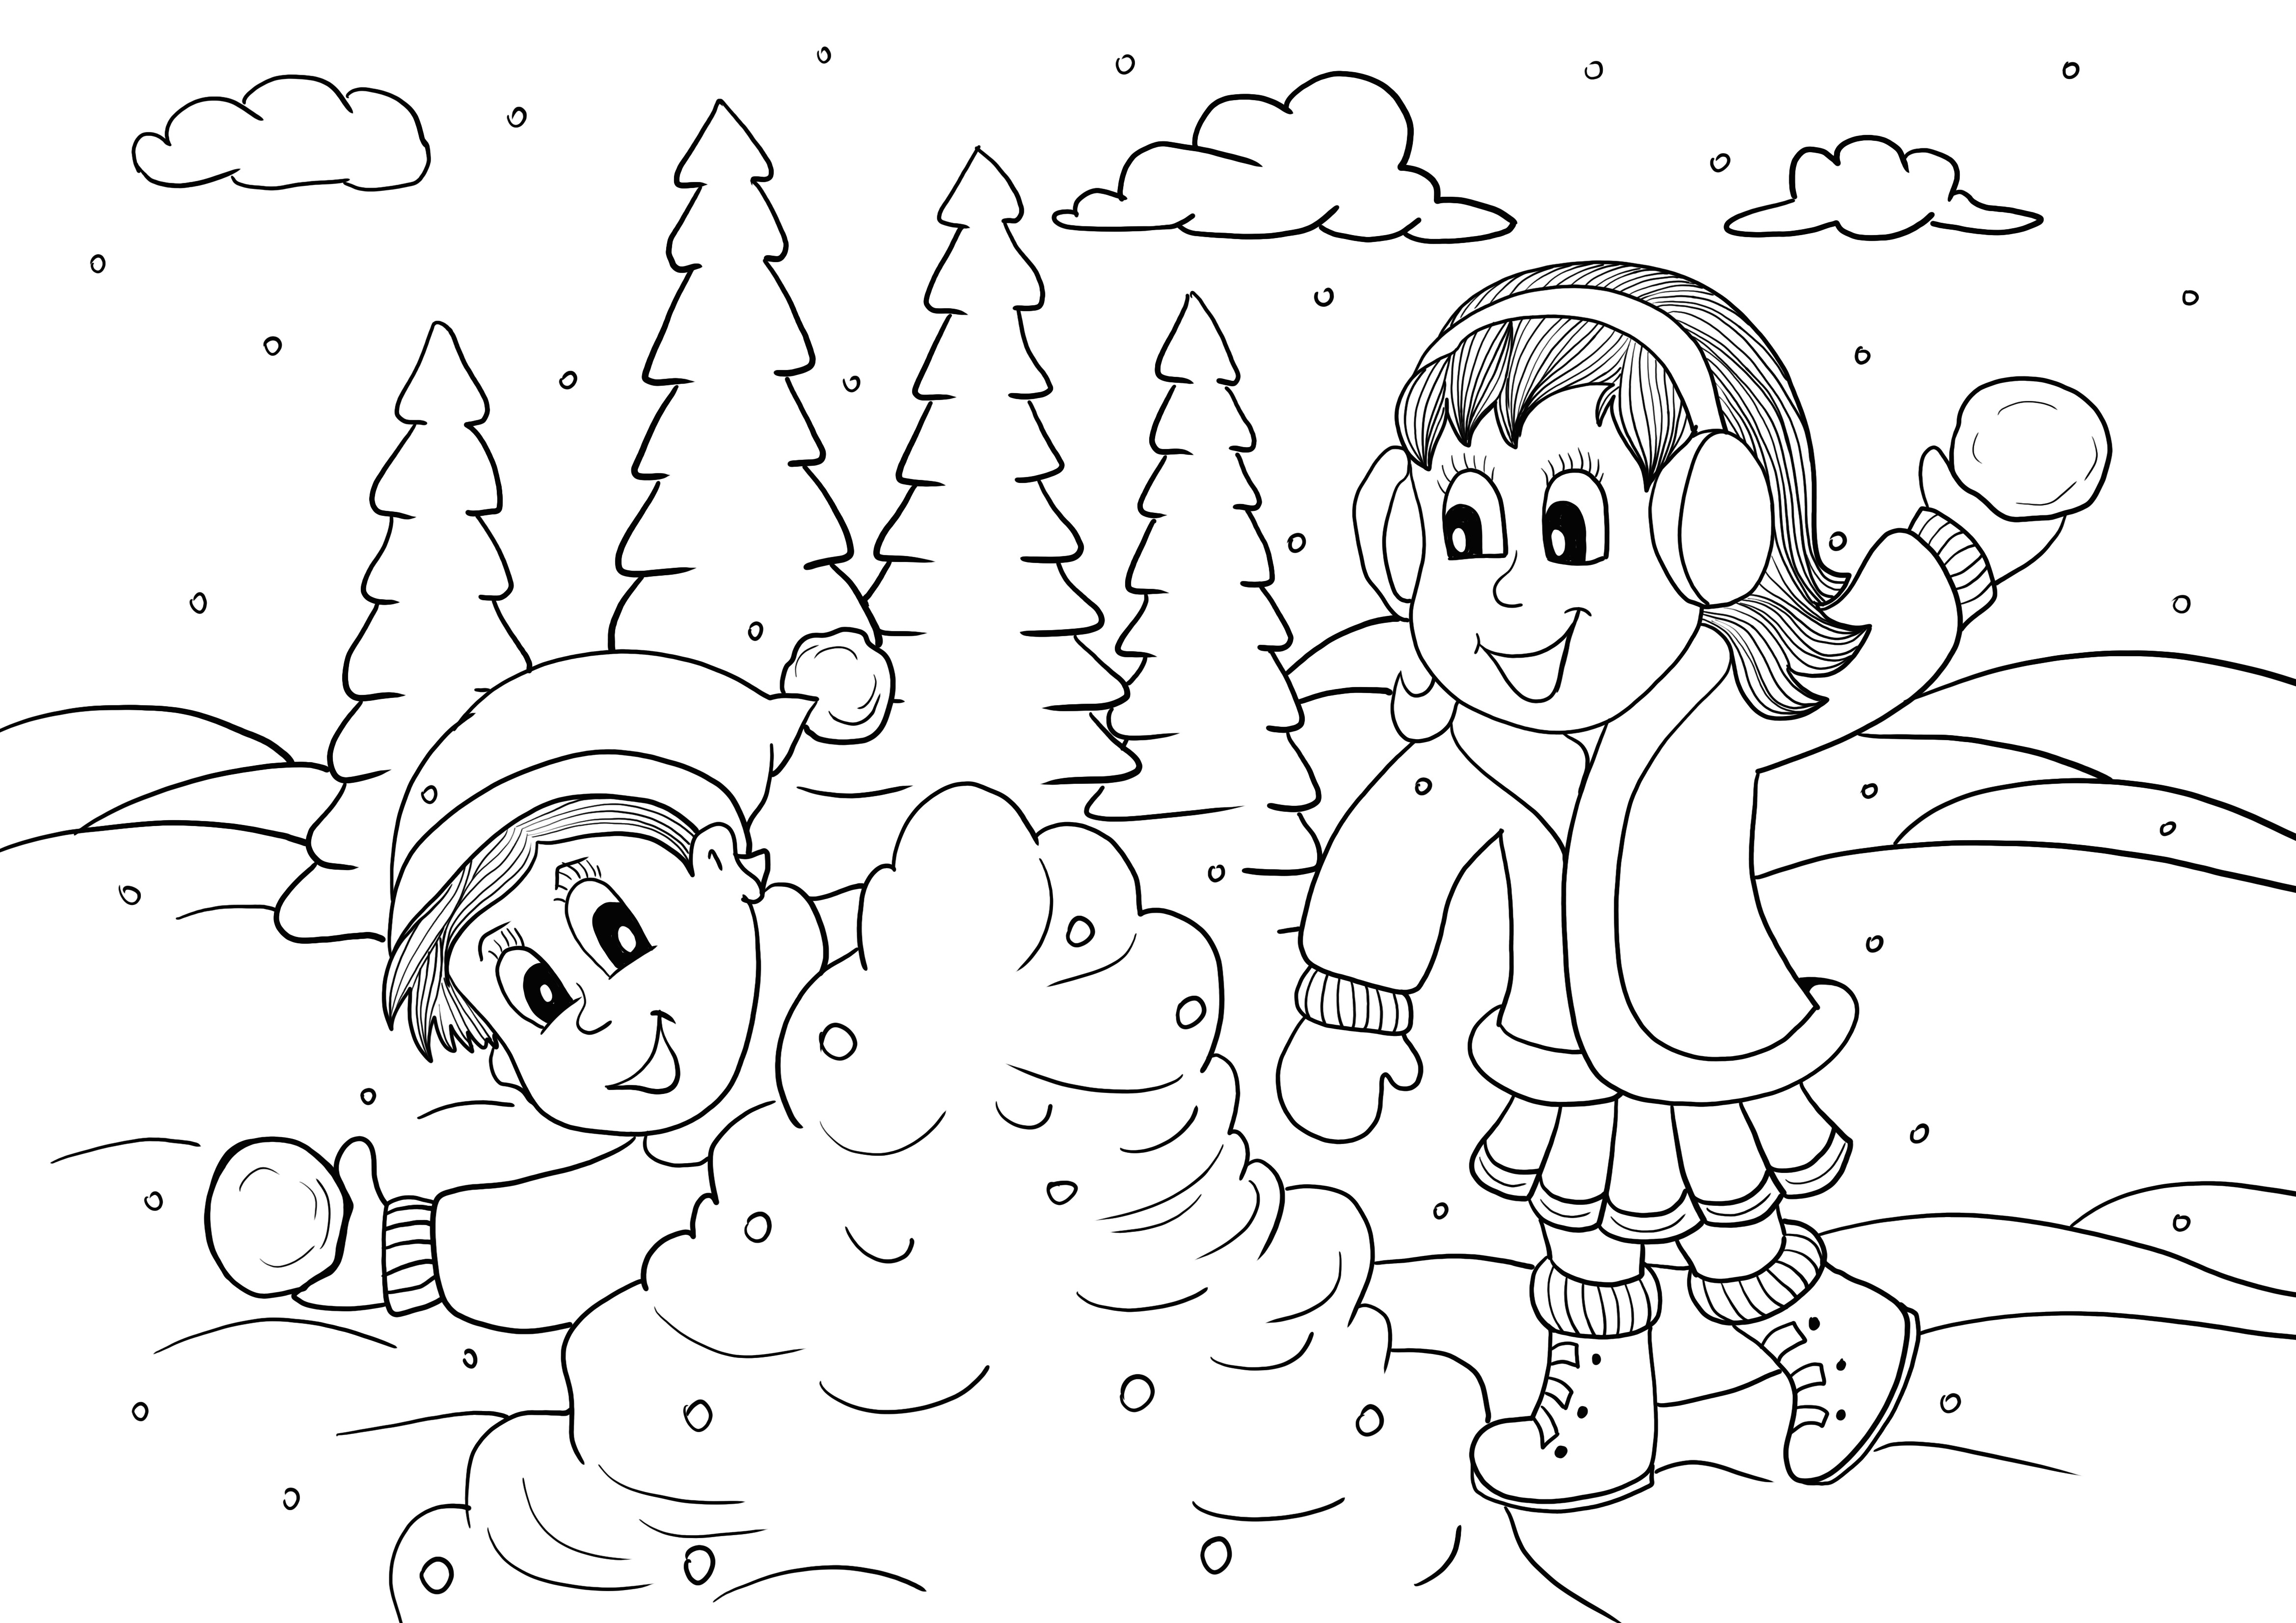 Dibujos de niños jugando con bolas de nieve para colorear e imprimir gratis